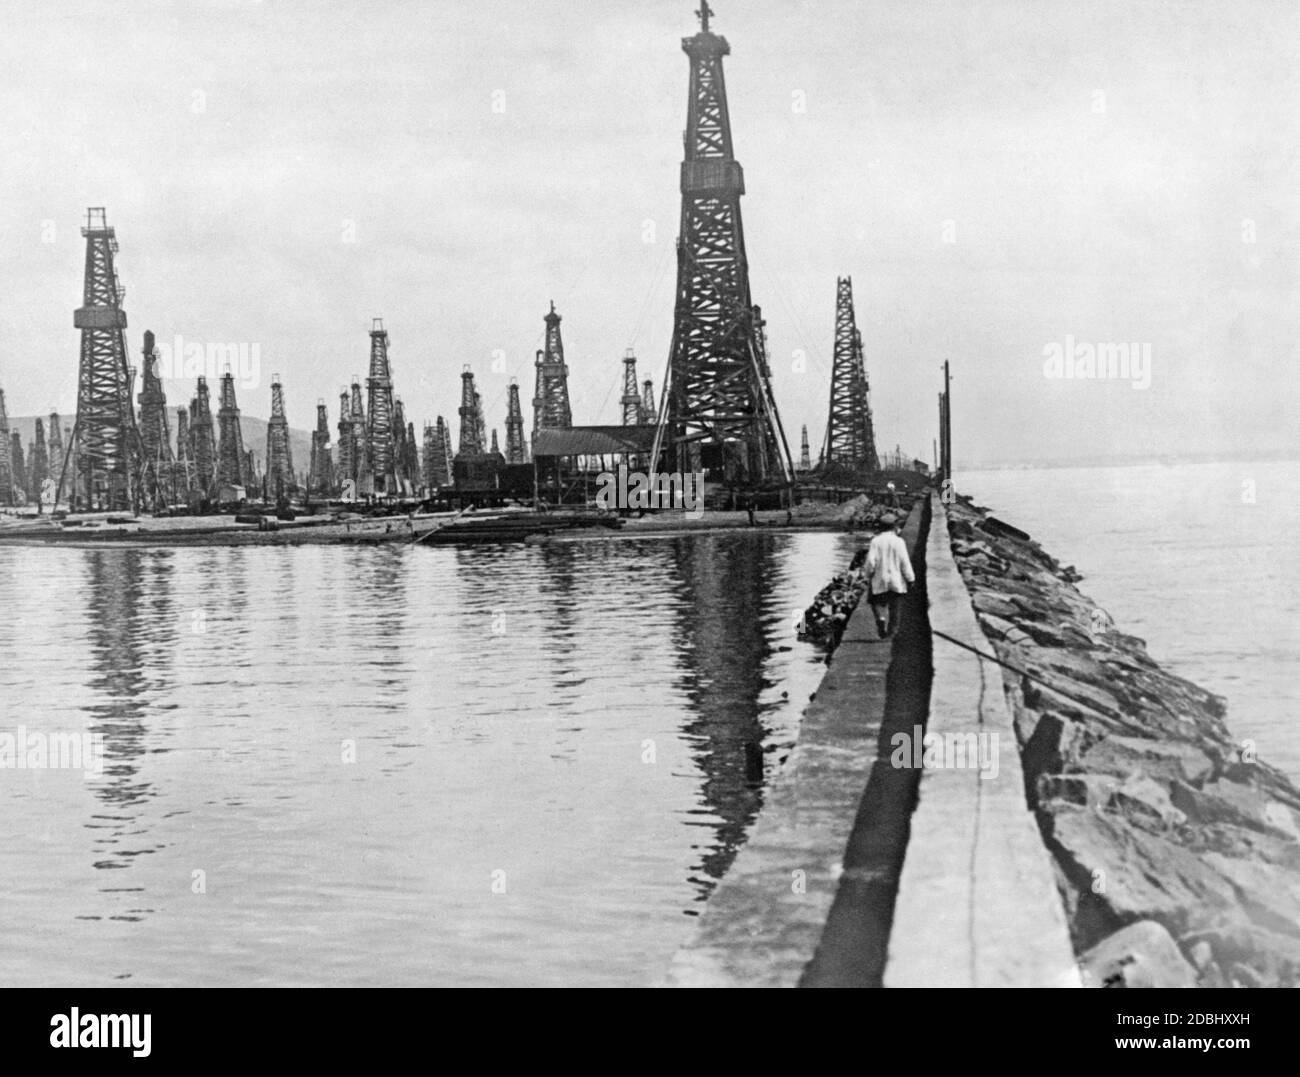 Oil fields in Baku on the Caspian Sea. Stock Photo